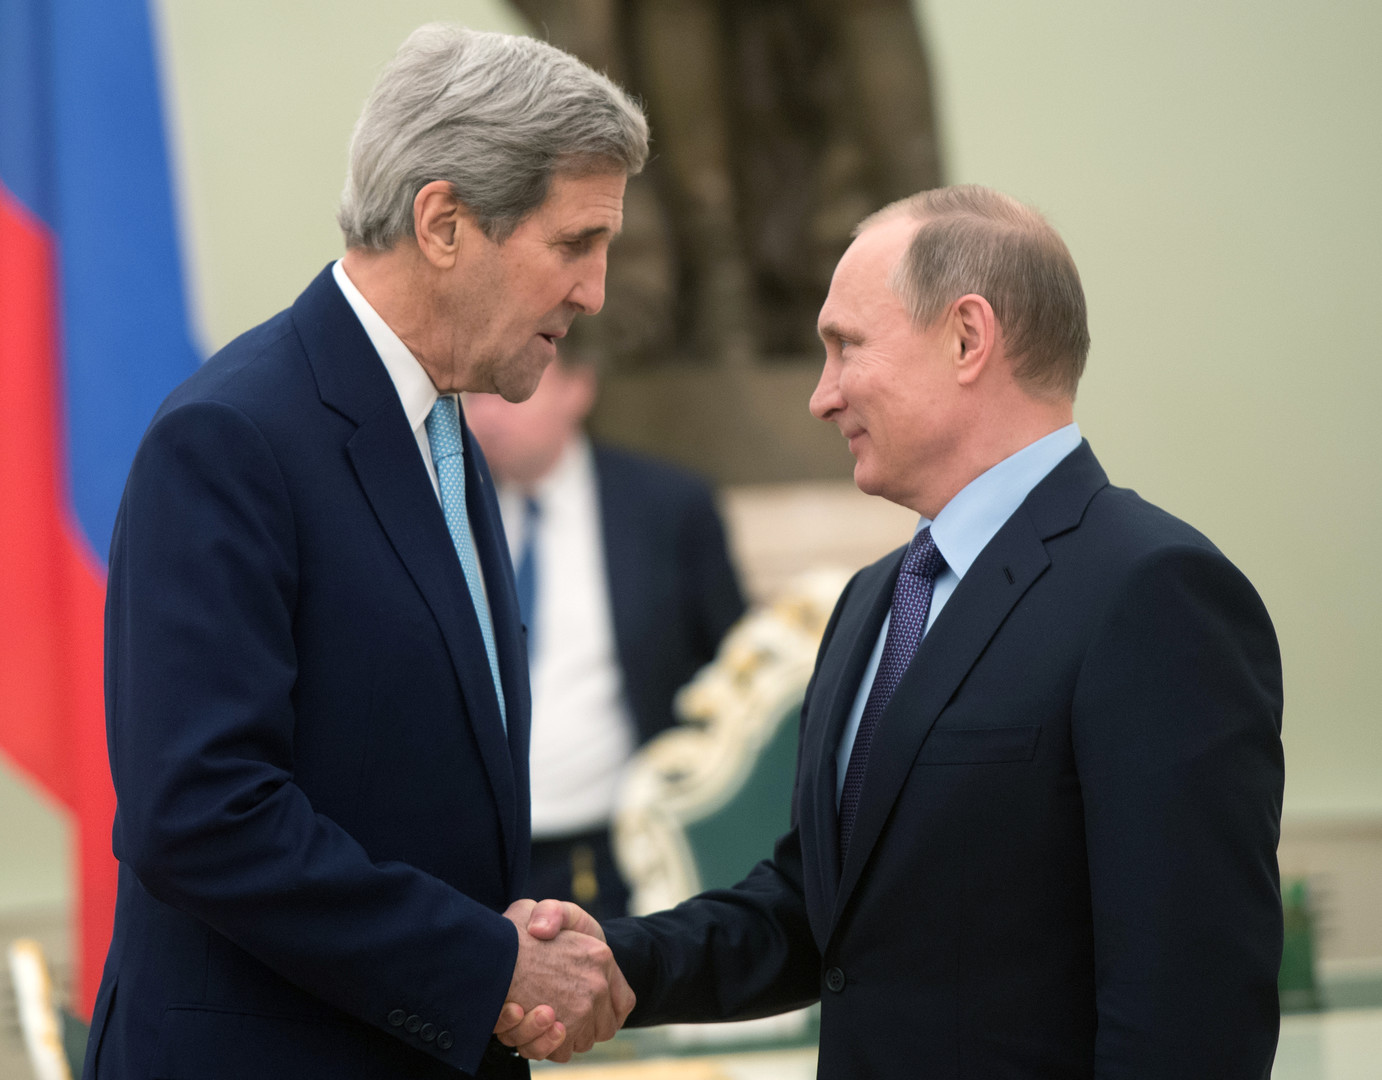 Kerry à la TV russe : «Washington ne cherche pas à changer le gouvernement, mais Assad doit partir»